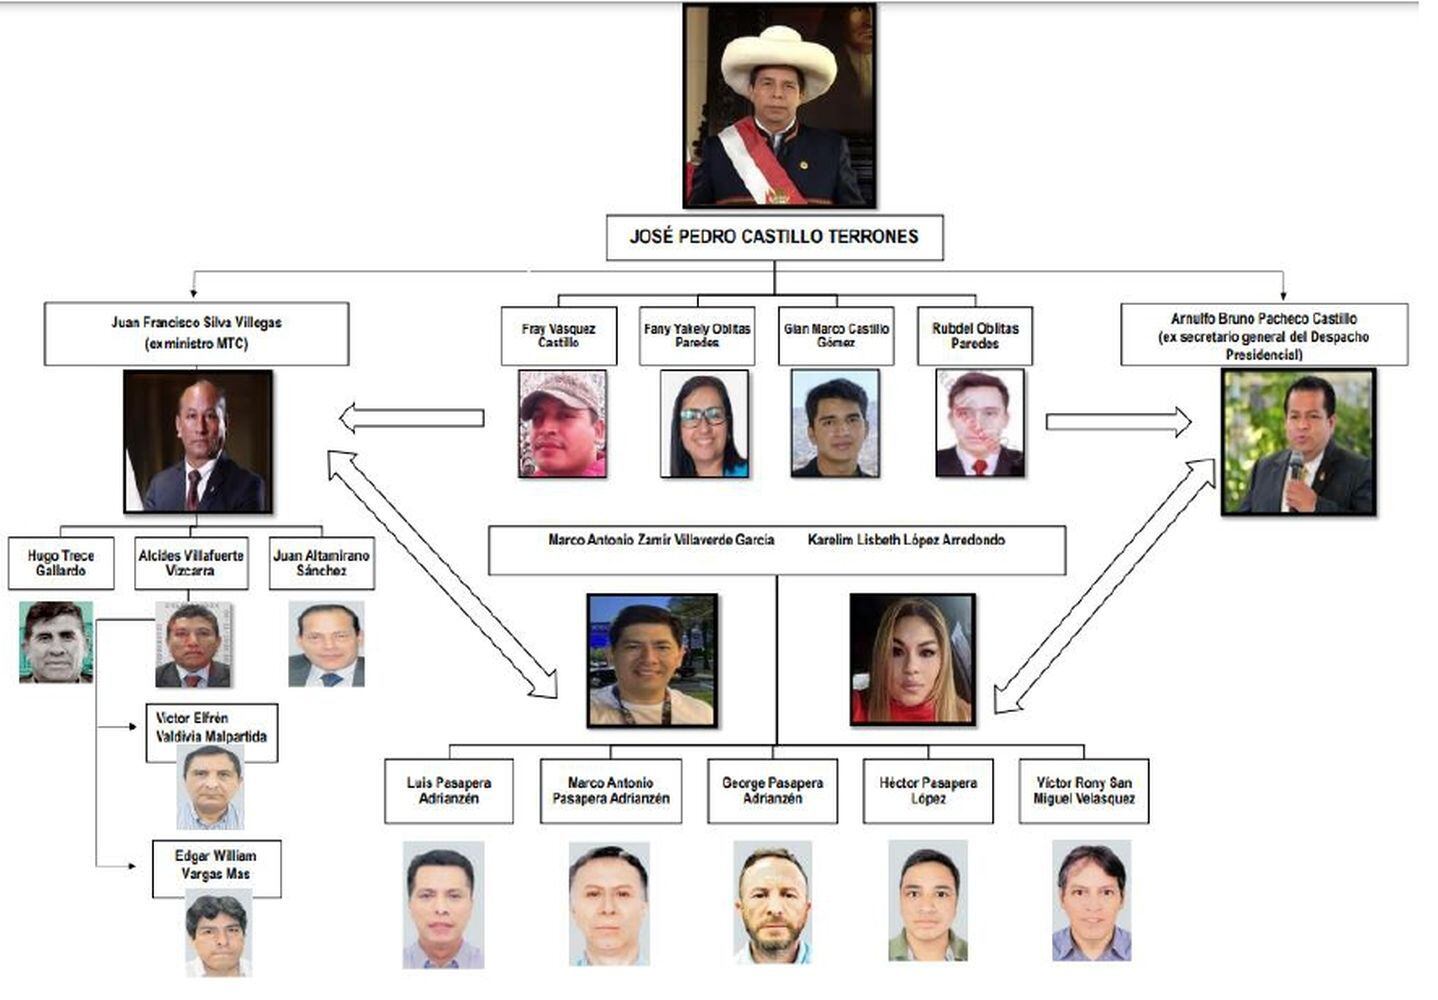 La presunta red criminal que encabezaría el presidente Pedro Castillo, según el informe final de la Comisión de Fiscalización.